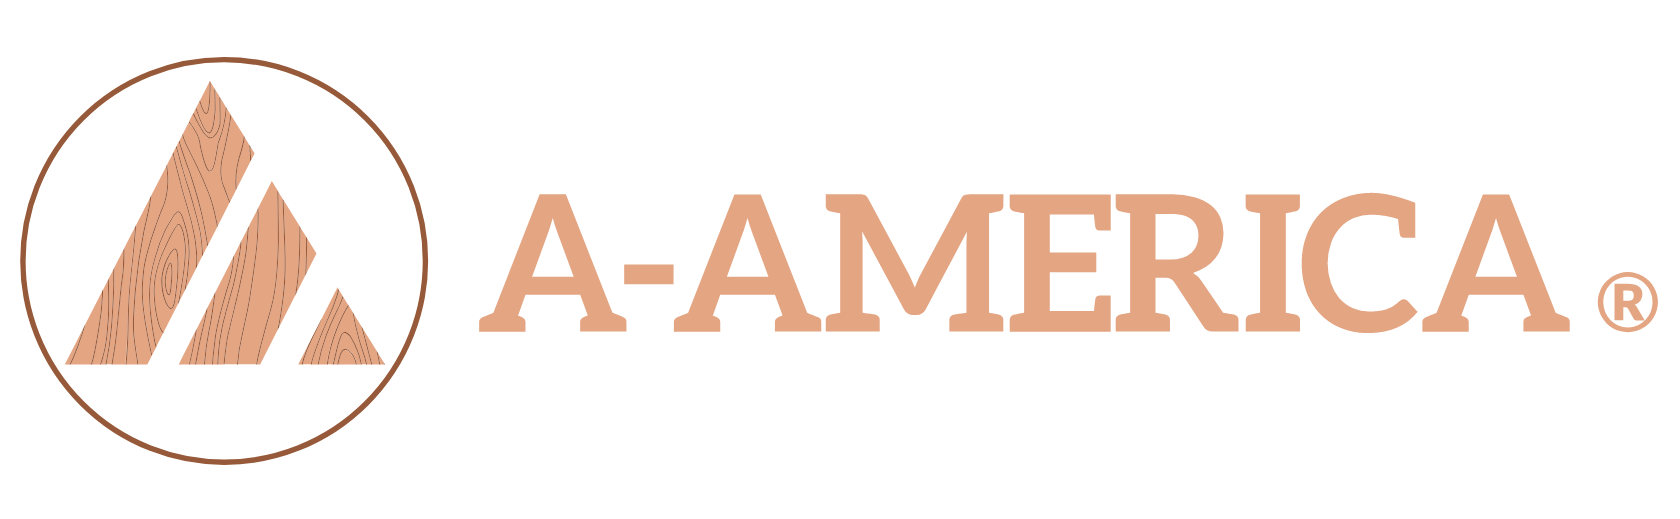 America Logo - Home America Wood Furniture